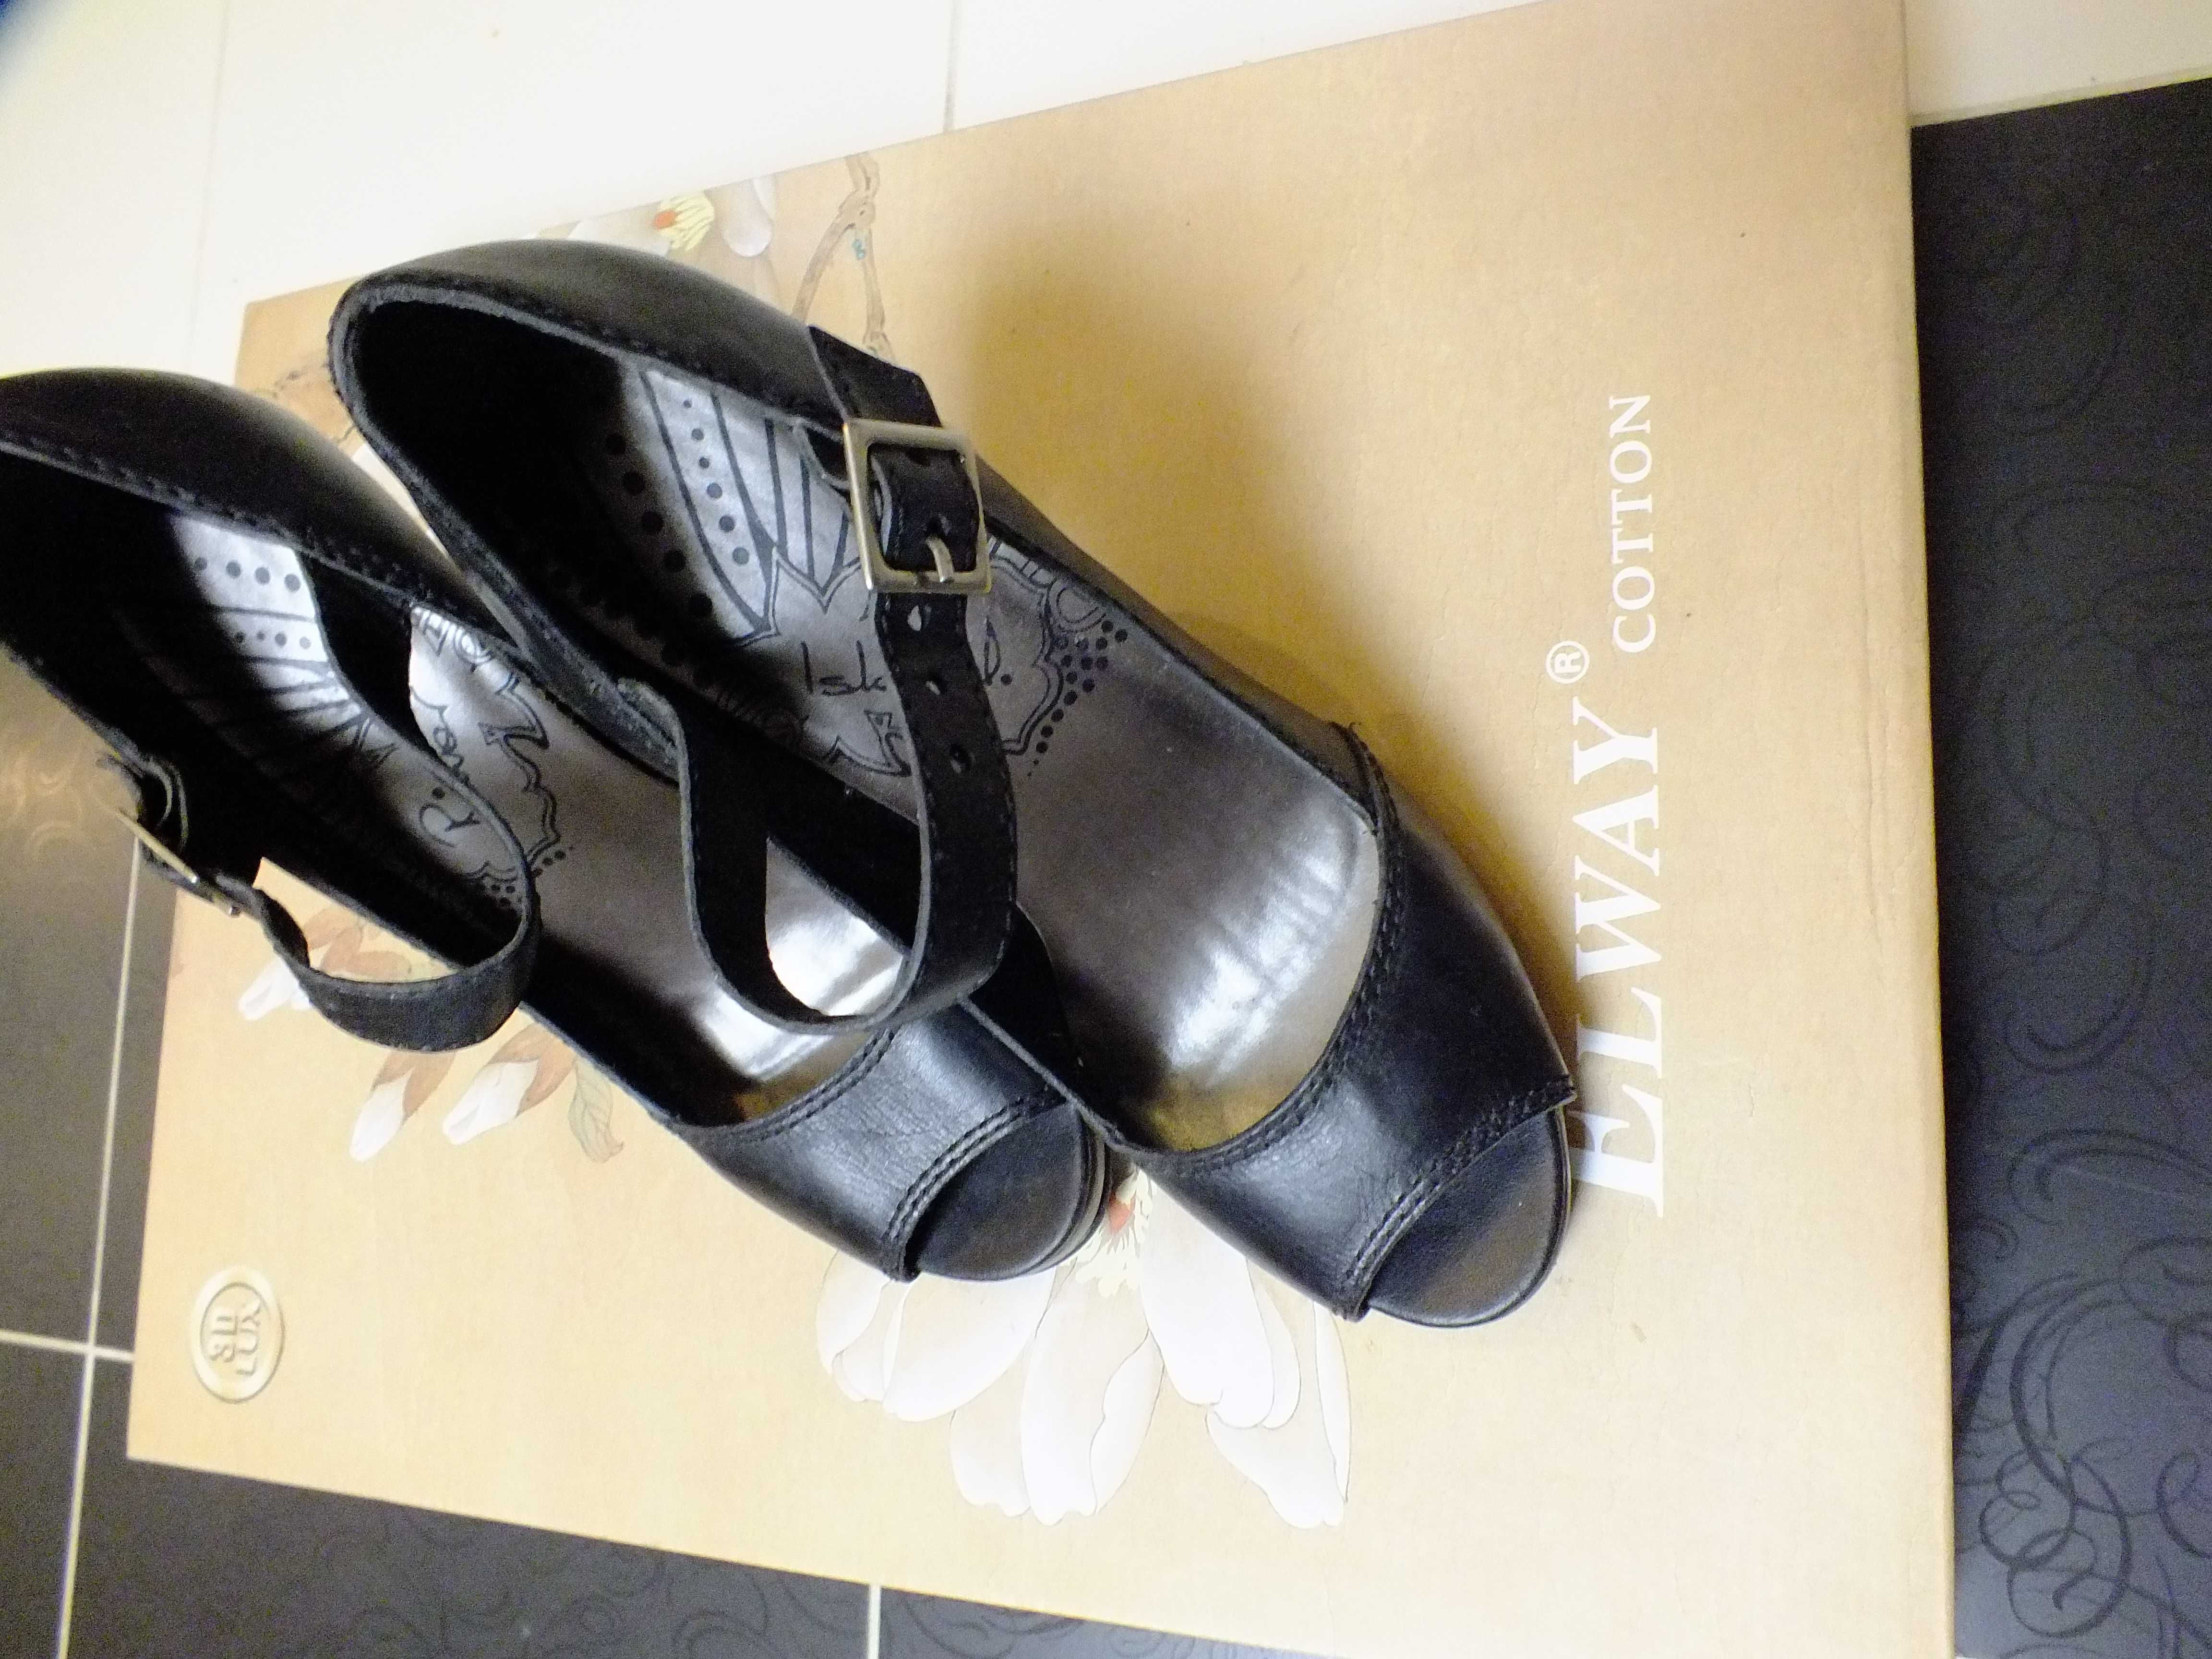 Pantofle czarne rozmiar 38